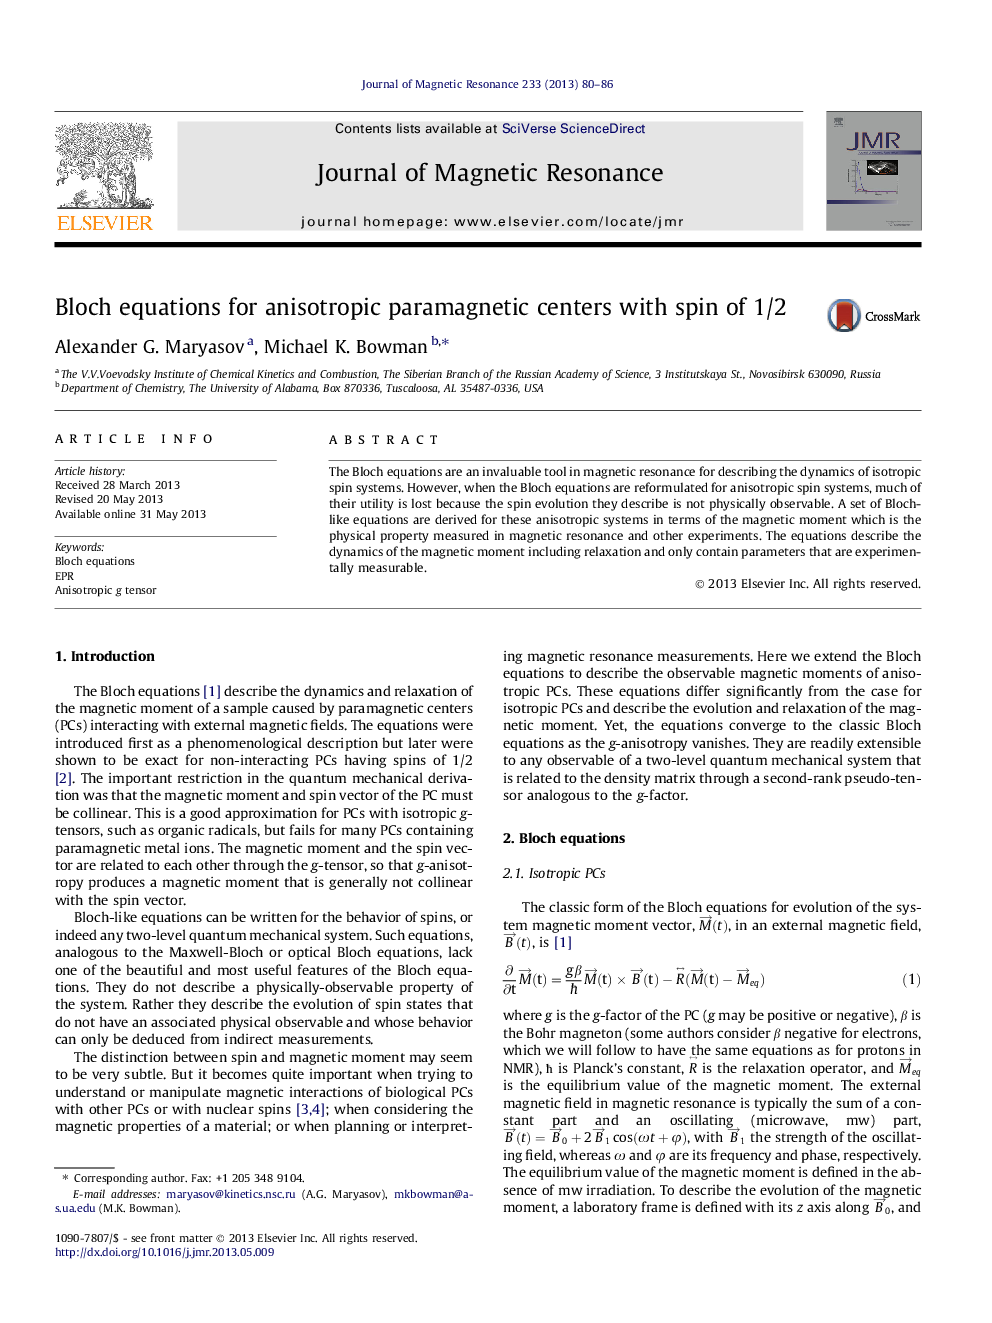 معادلات بلوک برای مراکز پارامغناطیس آنی استروپیک با چرخش 1/2 